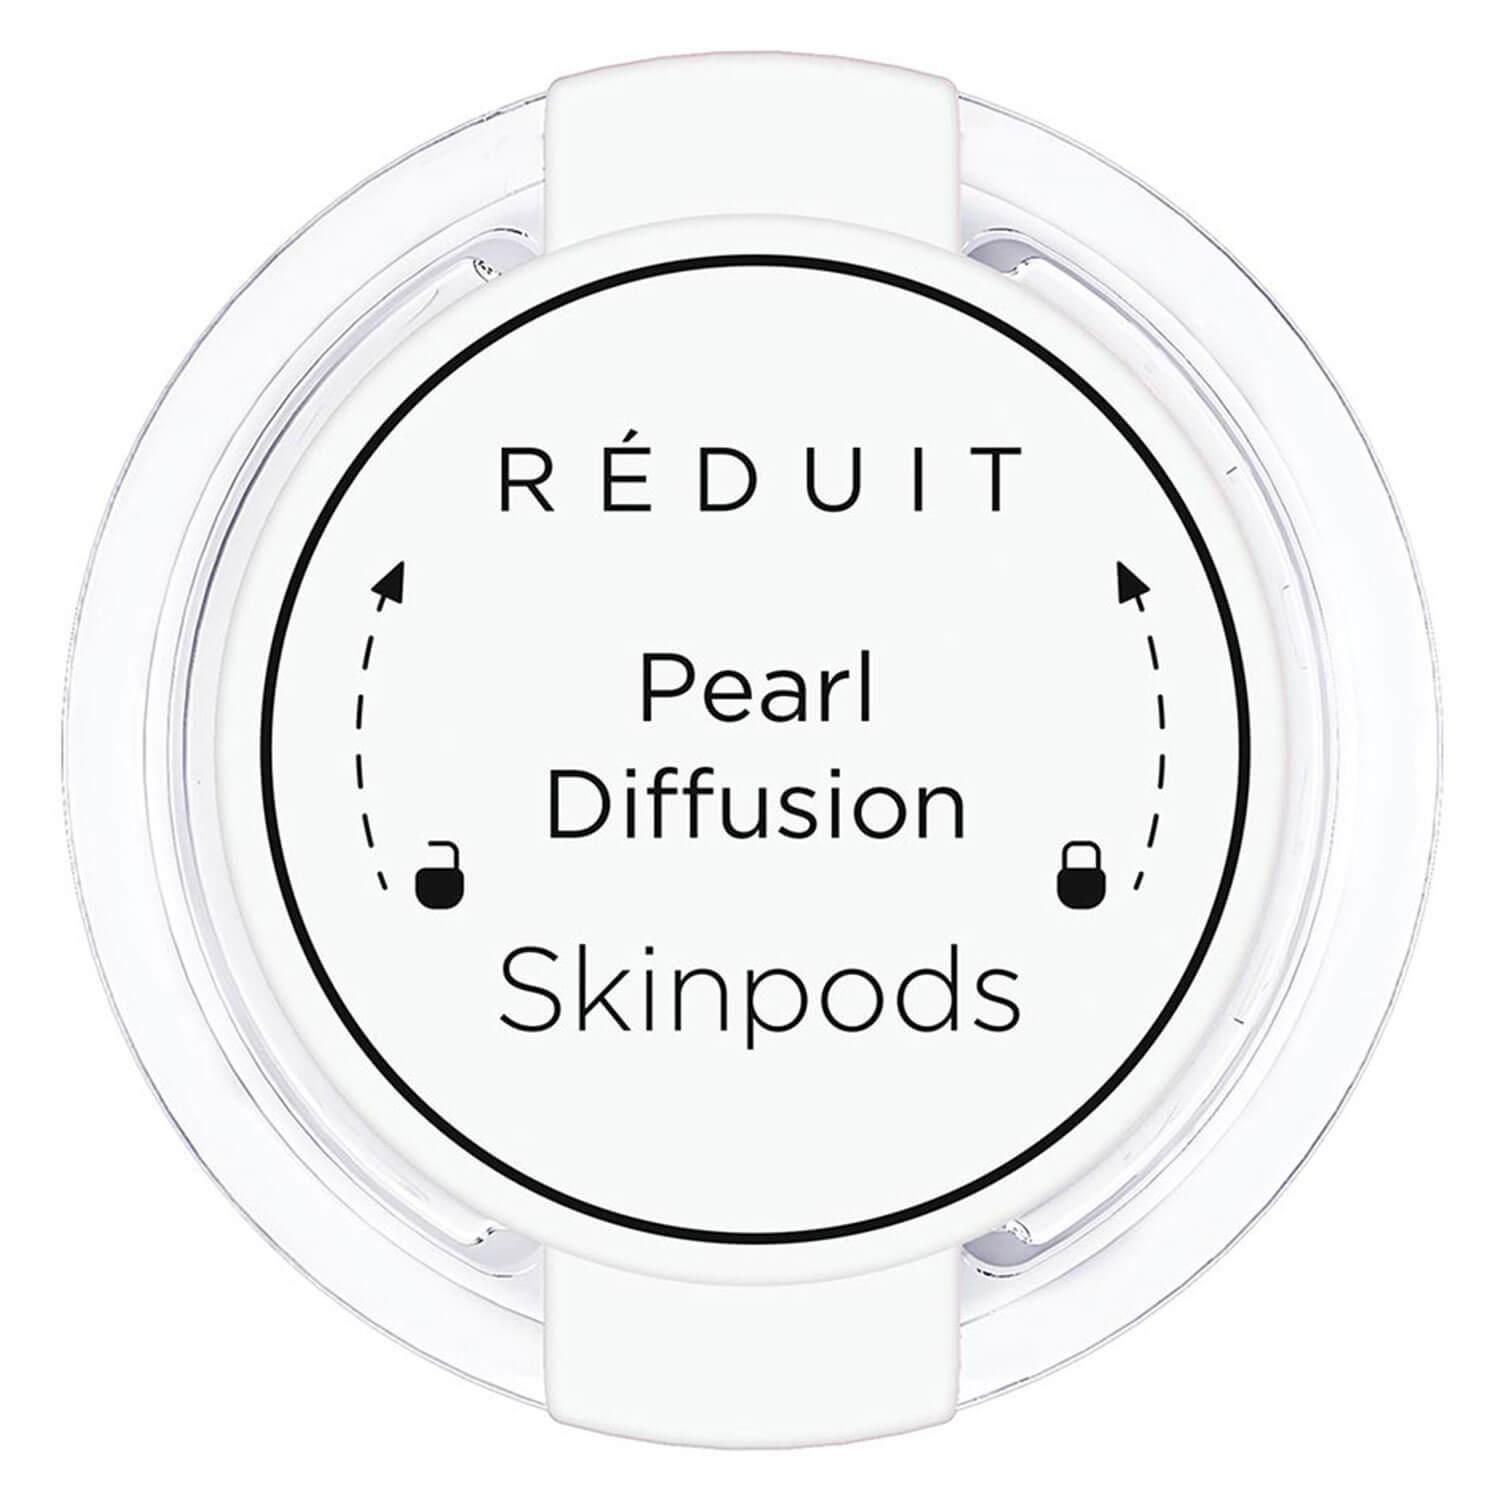 RÉDUIT - Pearl Diffusion Skinpods